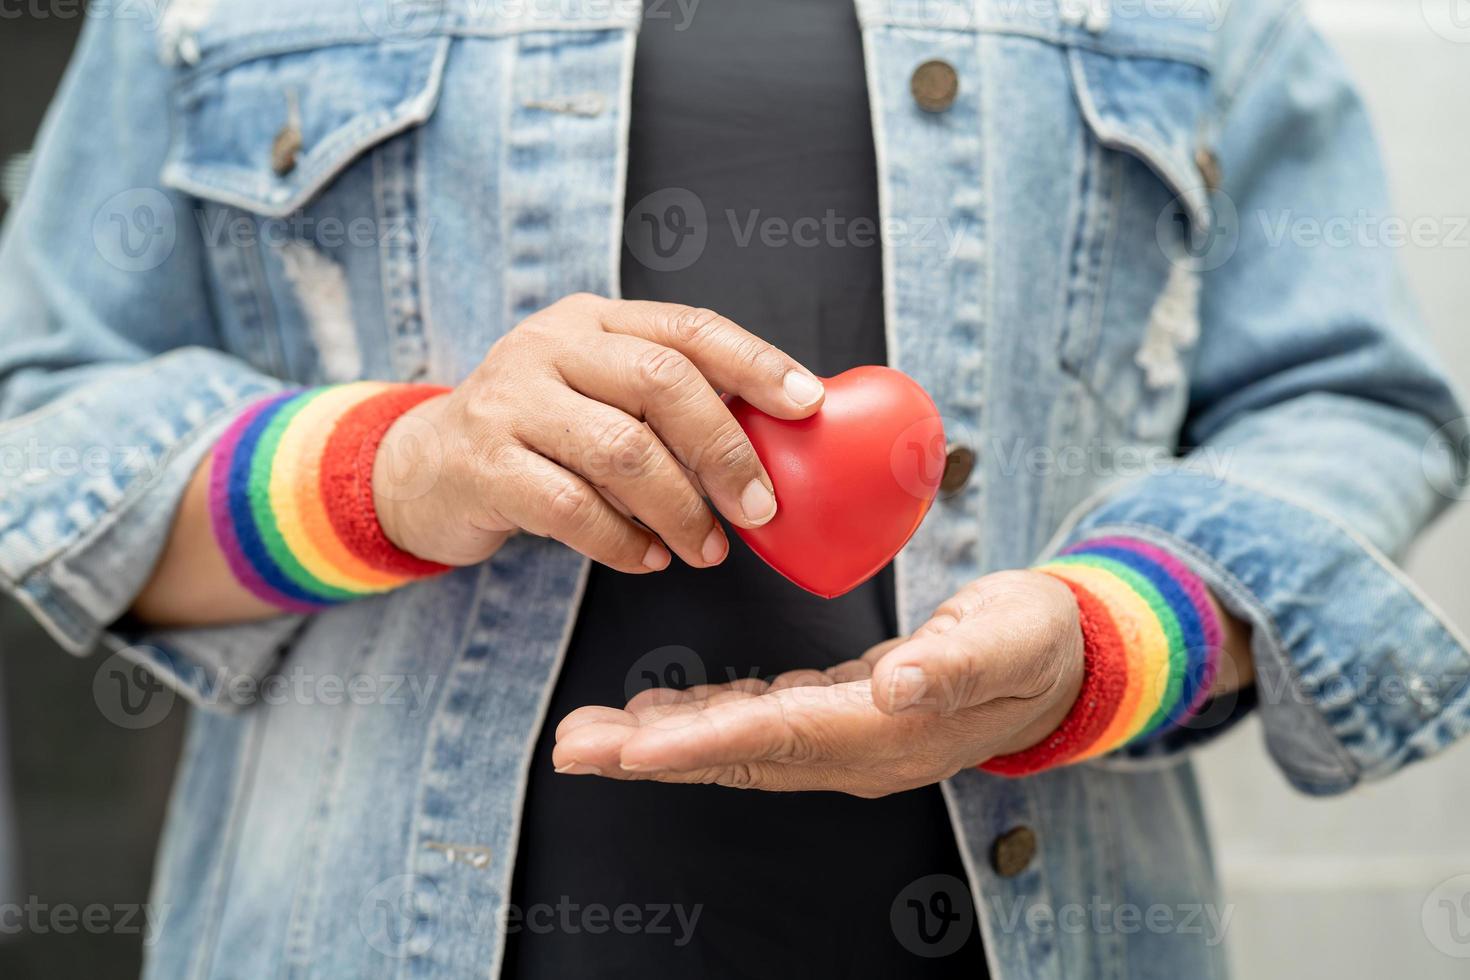 asiatische dame, die regenbogenflaggenarmbänder trägt und rotes herz hält, symbol des lgbt-stolzmonats, feiert jährlich im juni sozial für schwule, lesbische, bisexuelle, transgender, menschenrechte. foto